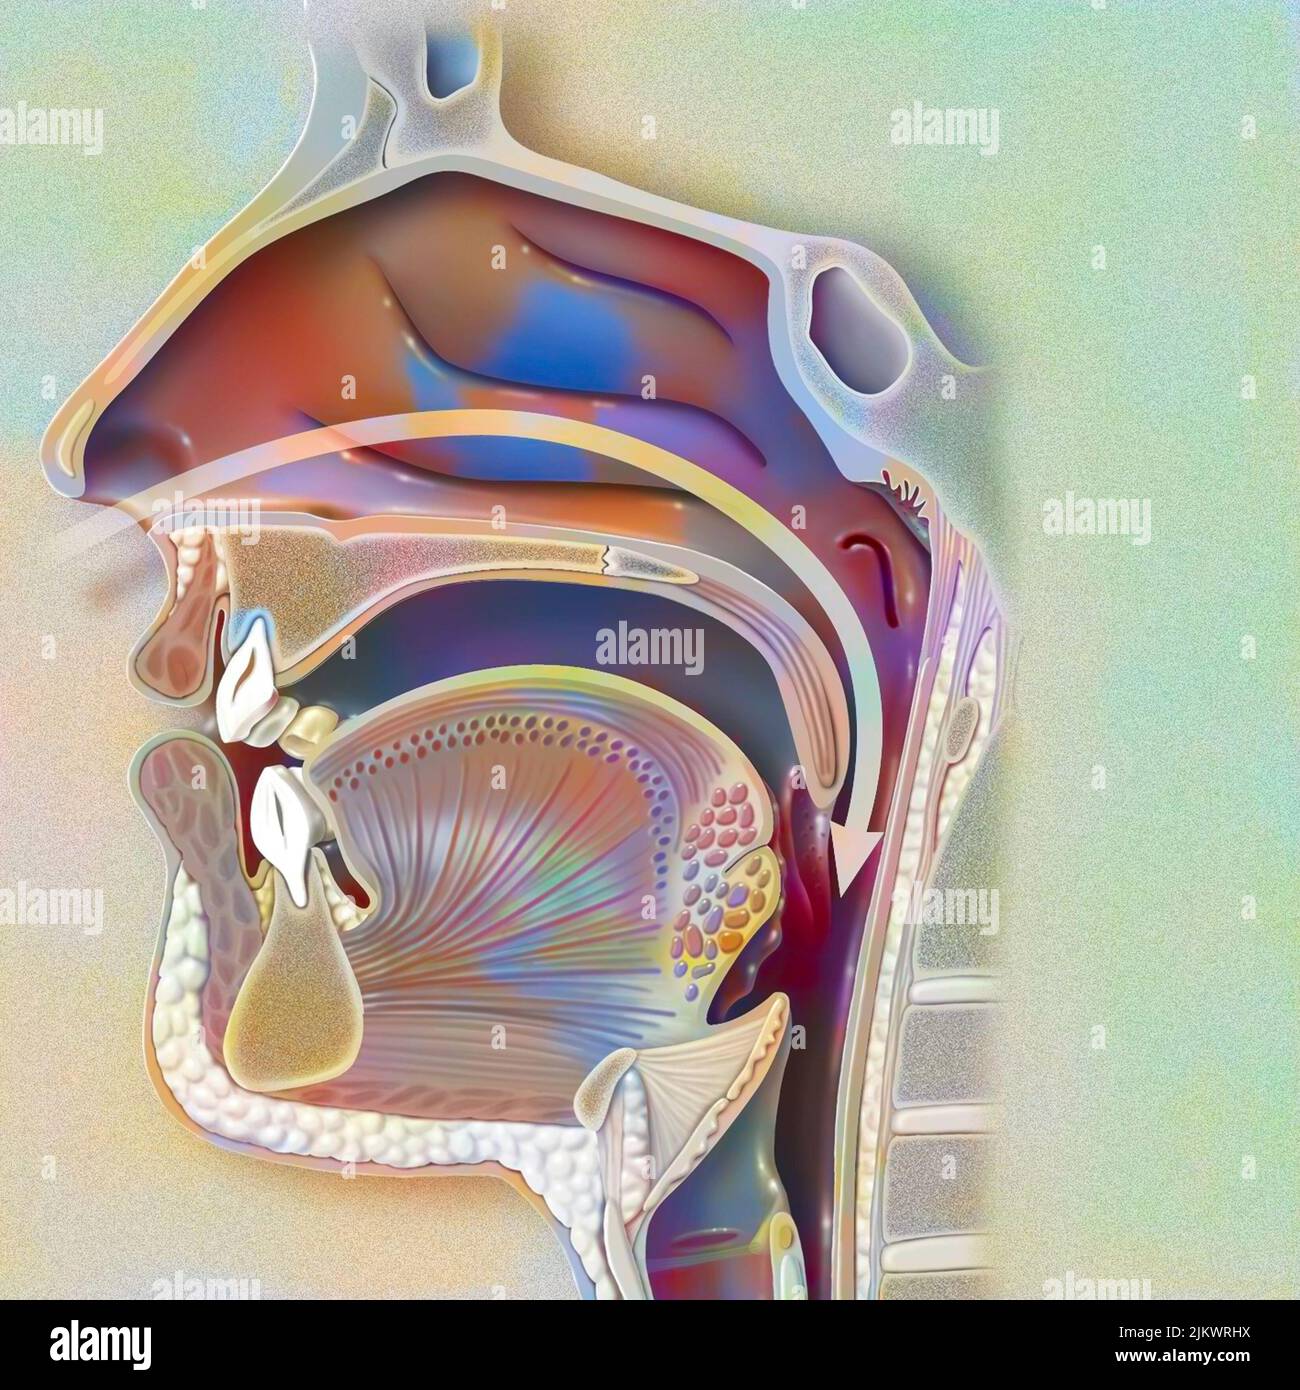 Voies aériennes (nasopharynx) révélant la cavité nasale, la paroi pharyngée et l'uvula. Banque D'Images